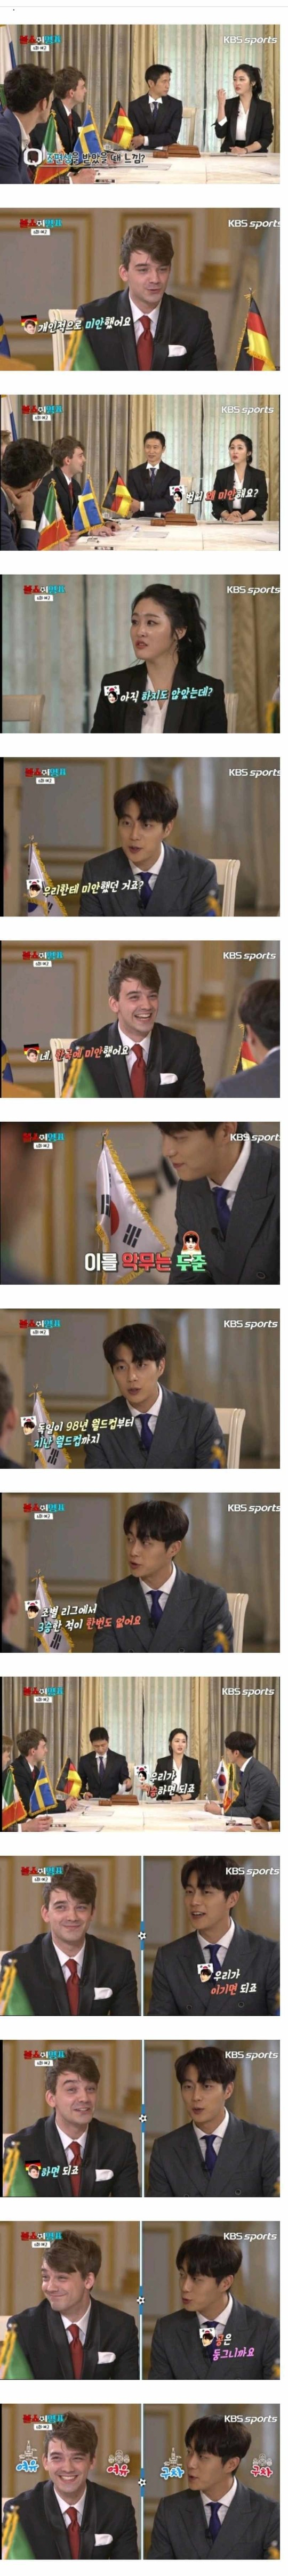 KBS스포츠 ‘볼쇼 이영표’ 방송 캡처 / 온라인 커뮤니티